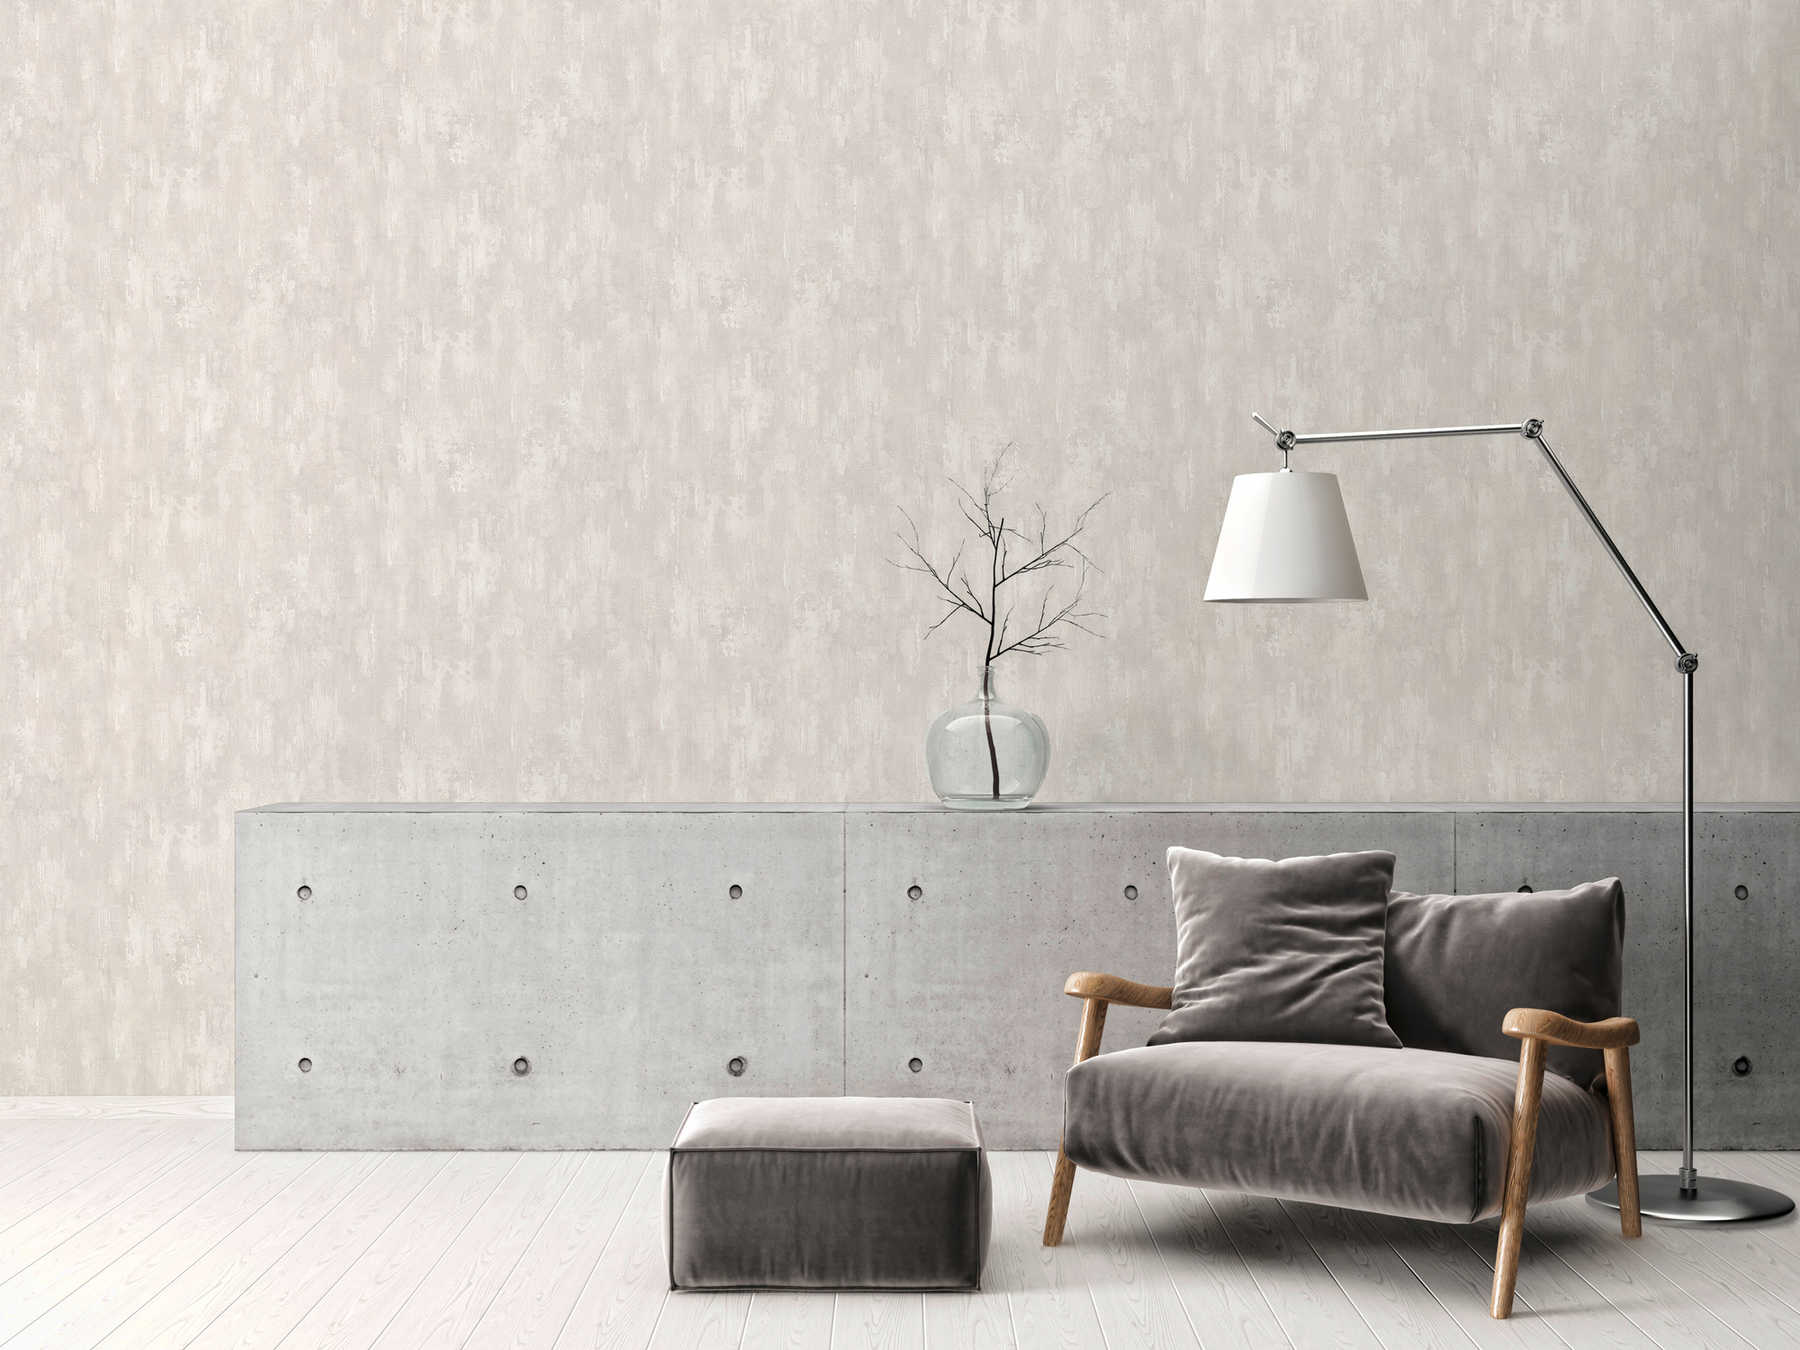             Behang met gipsstructuur, betonlook en kleurverloop - grijs, wit
        